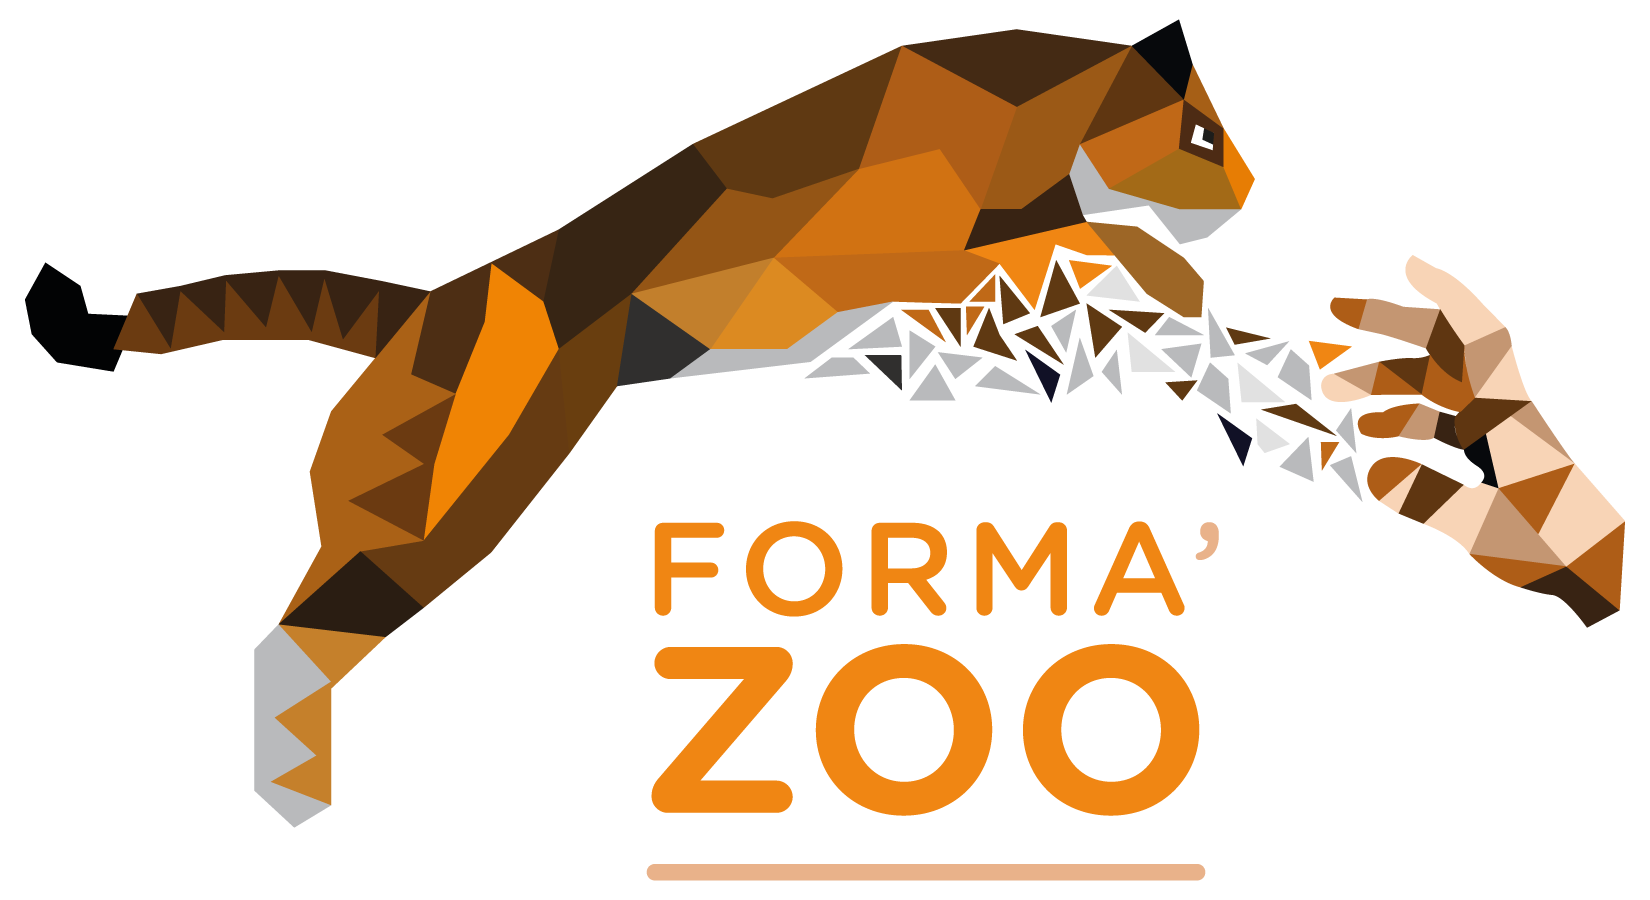 Forma Zoo est une ecole qui propose des formations autour du bien etre animal - France - Zoo Academia